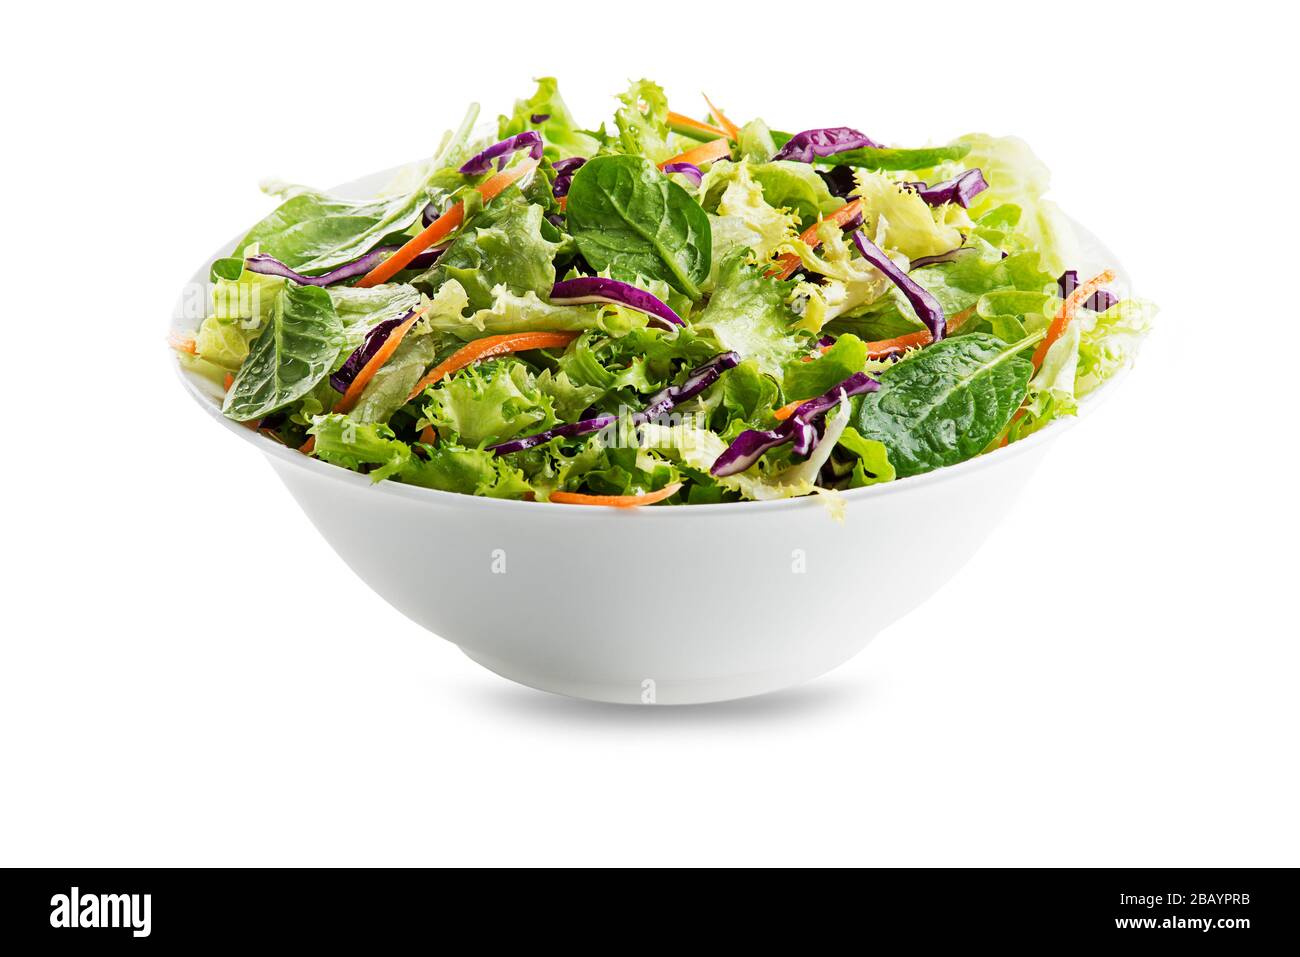 Salade de laitue verte avec légumes frais mélangés isolés sur fond blanc Banque D'Images